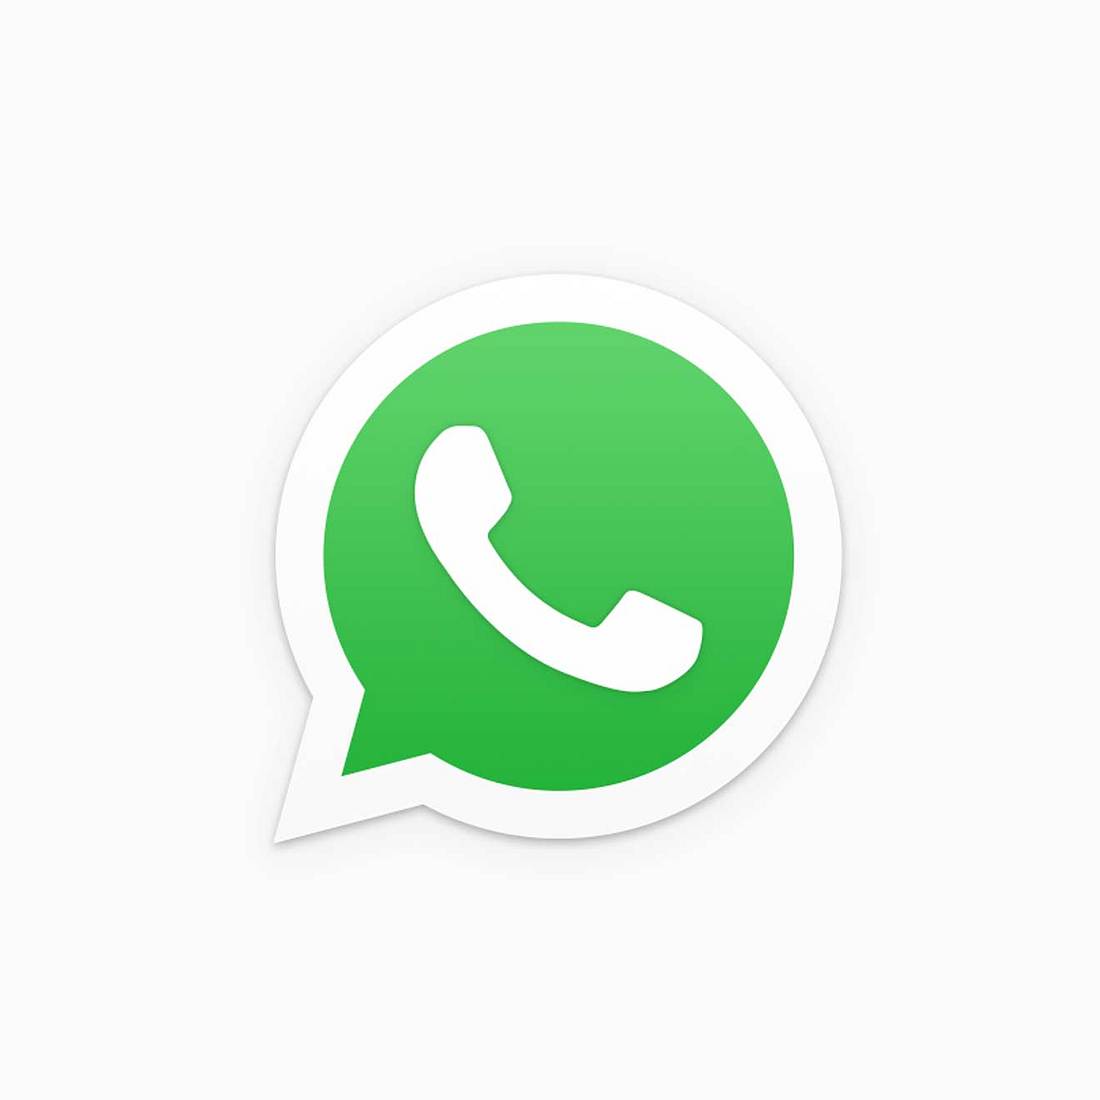 WhatsApp ist der beliebteste Messenger-Service in Europa. Jetzt soll es eine Erweiterung der App geben, die das Online-Bezahlen vereinfachen soll.